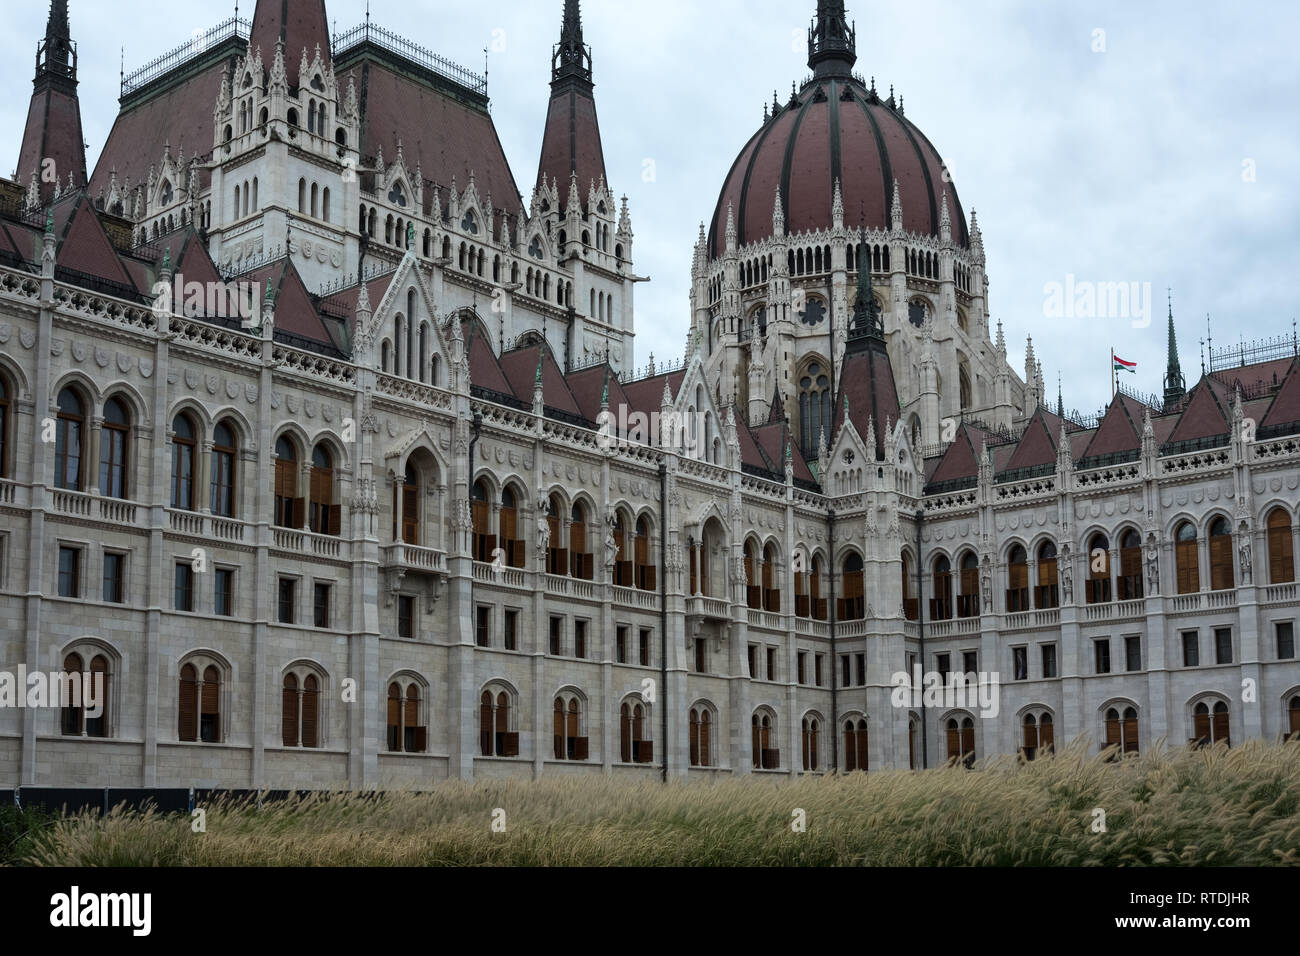 Ungherese edificio del Parlamento europeo a Budapest che mostra il dettaglio di architettura e ornamentazione. Piccolo rosso, bianco e verde bandiera ungherese è visibile Foto Stock